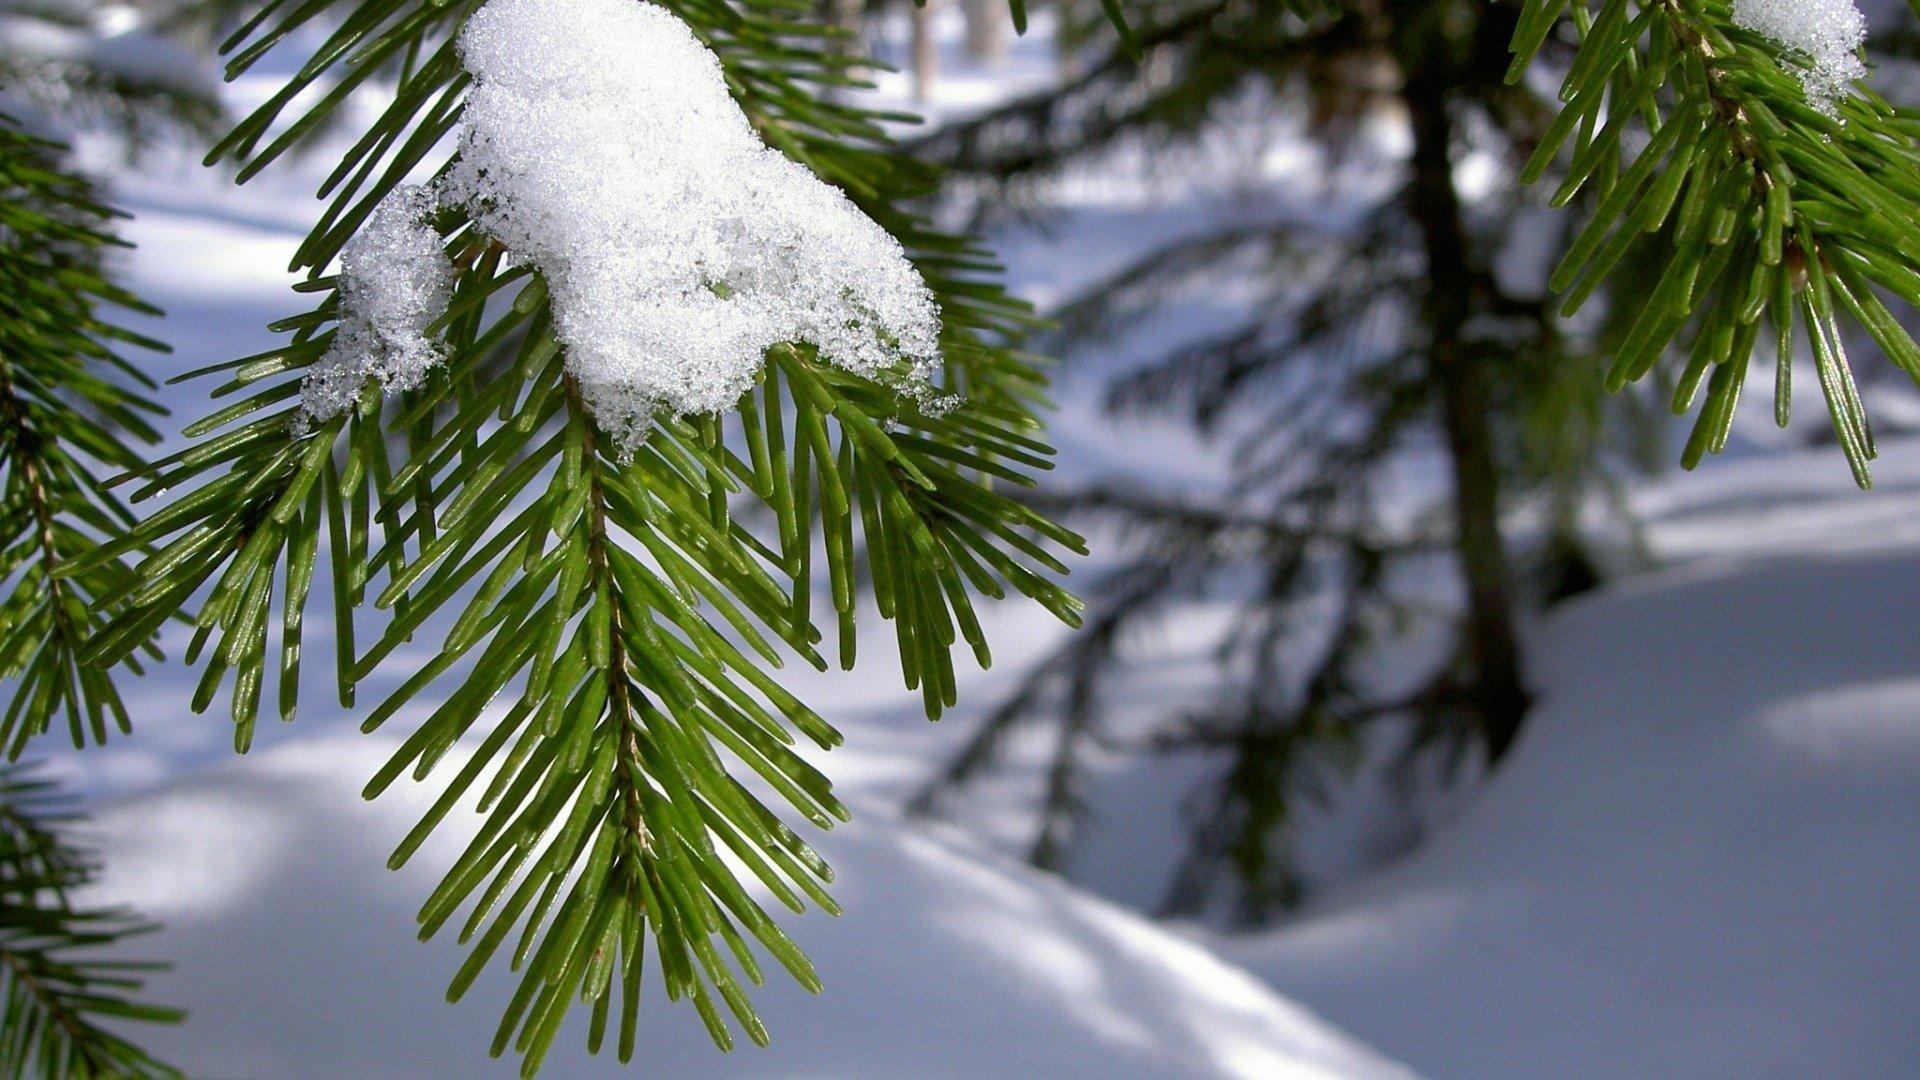 Бесплатные стоковые фото на тему вертикальный выстрел, зима, обои для  мобильного телефона, свежесть, снег, сосновые листья